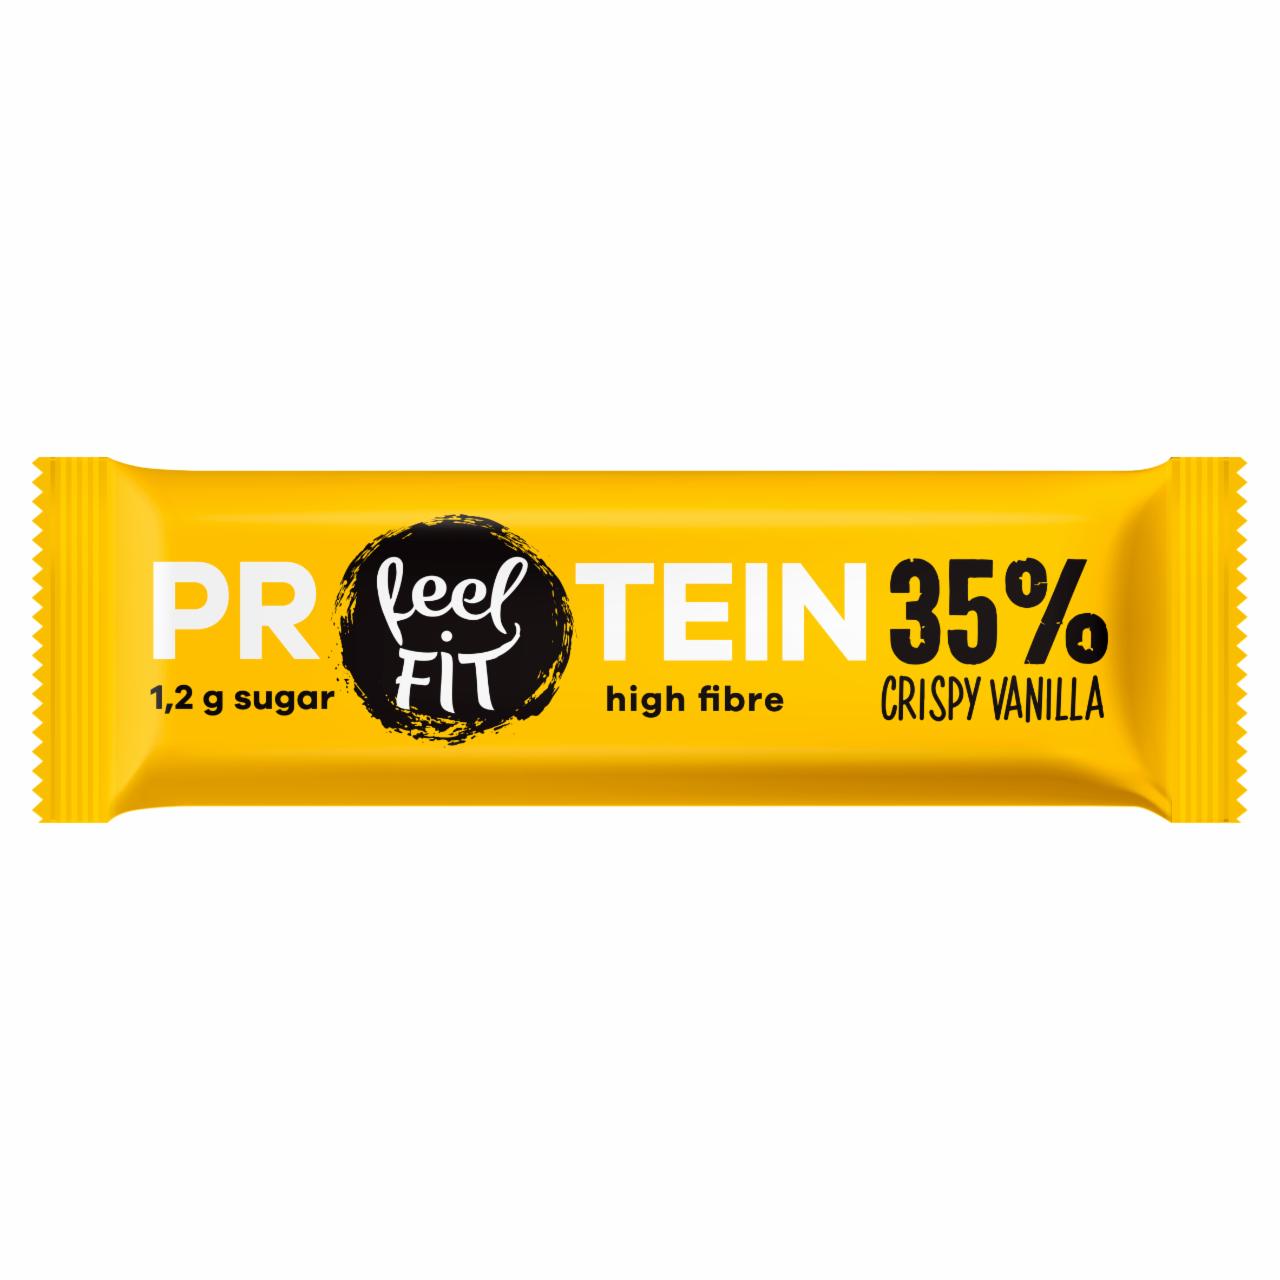 Zdjęcia - Feel Fit Protein 35% Baton proteinowy o smaku waniliowym w polewie jogurtowej 40 g